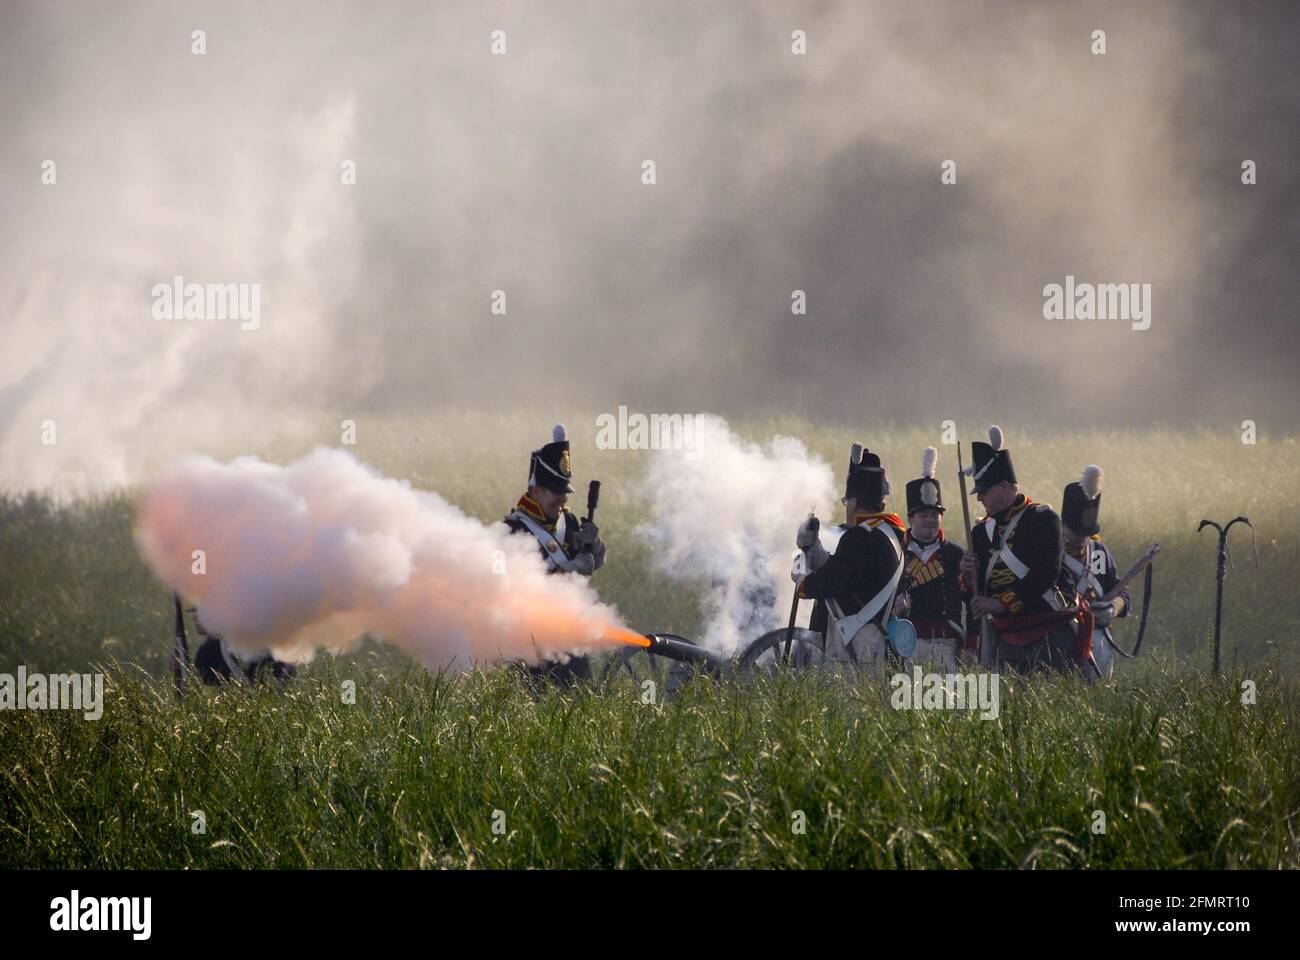 Feuer frei! Britische Artillerie während der Darstellung der Schlacht von Waterloo. - Feuer! Britische Artillerie bei der Nachstellung der Schlacht von Waterloo. Stockfoto